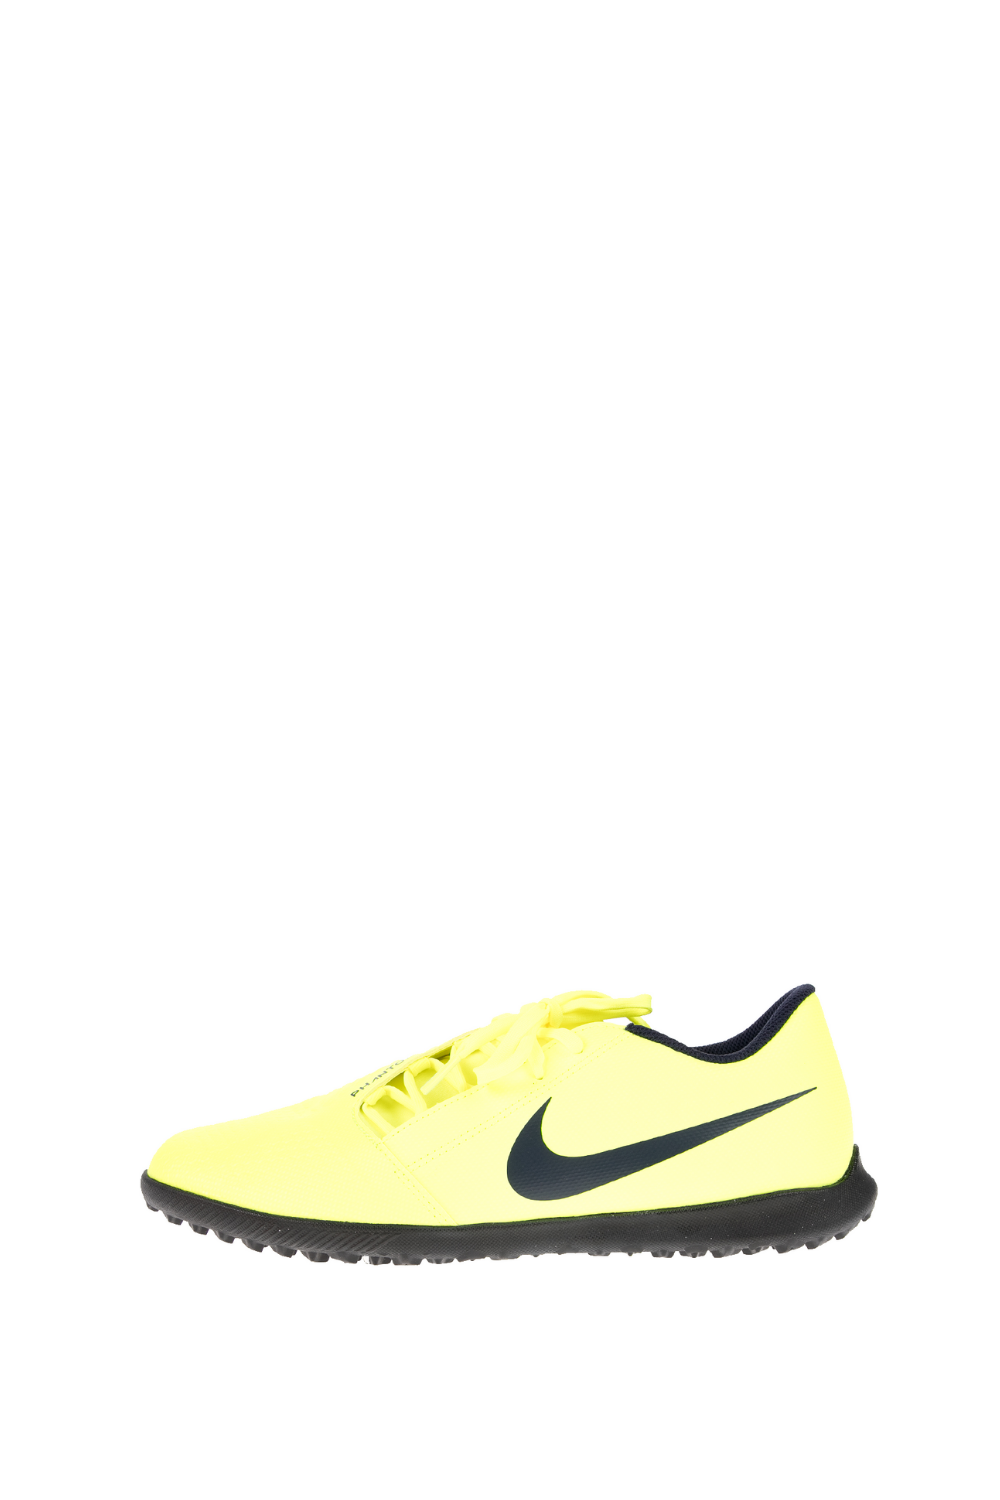 Ανδρικά/Παπούτσια/Αθλητικά/Football NIKE - Unisex παπούτσια football PHANTOM VENOM CLUB TF κίτρινα